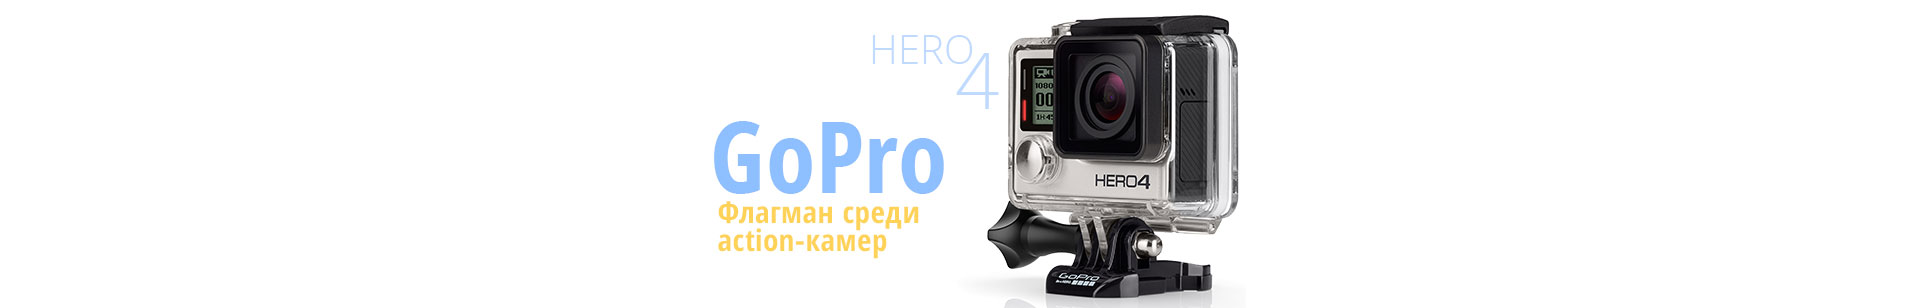 GoPro HERO 4